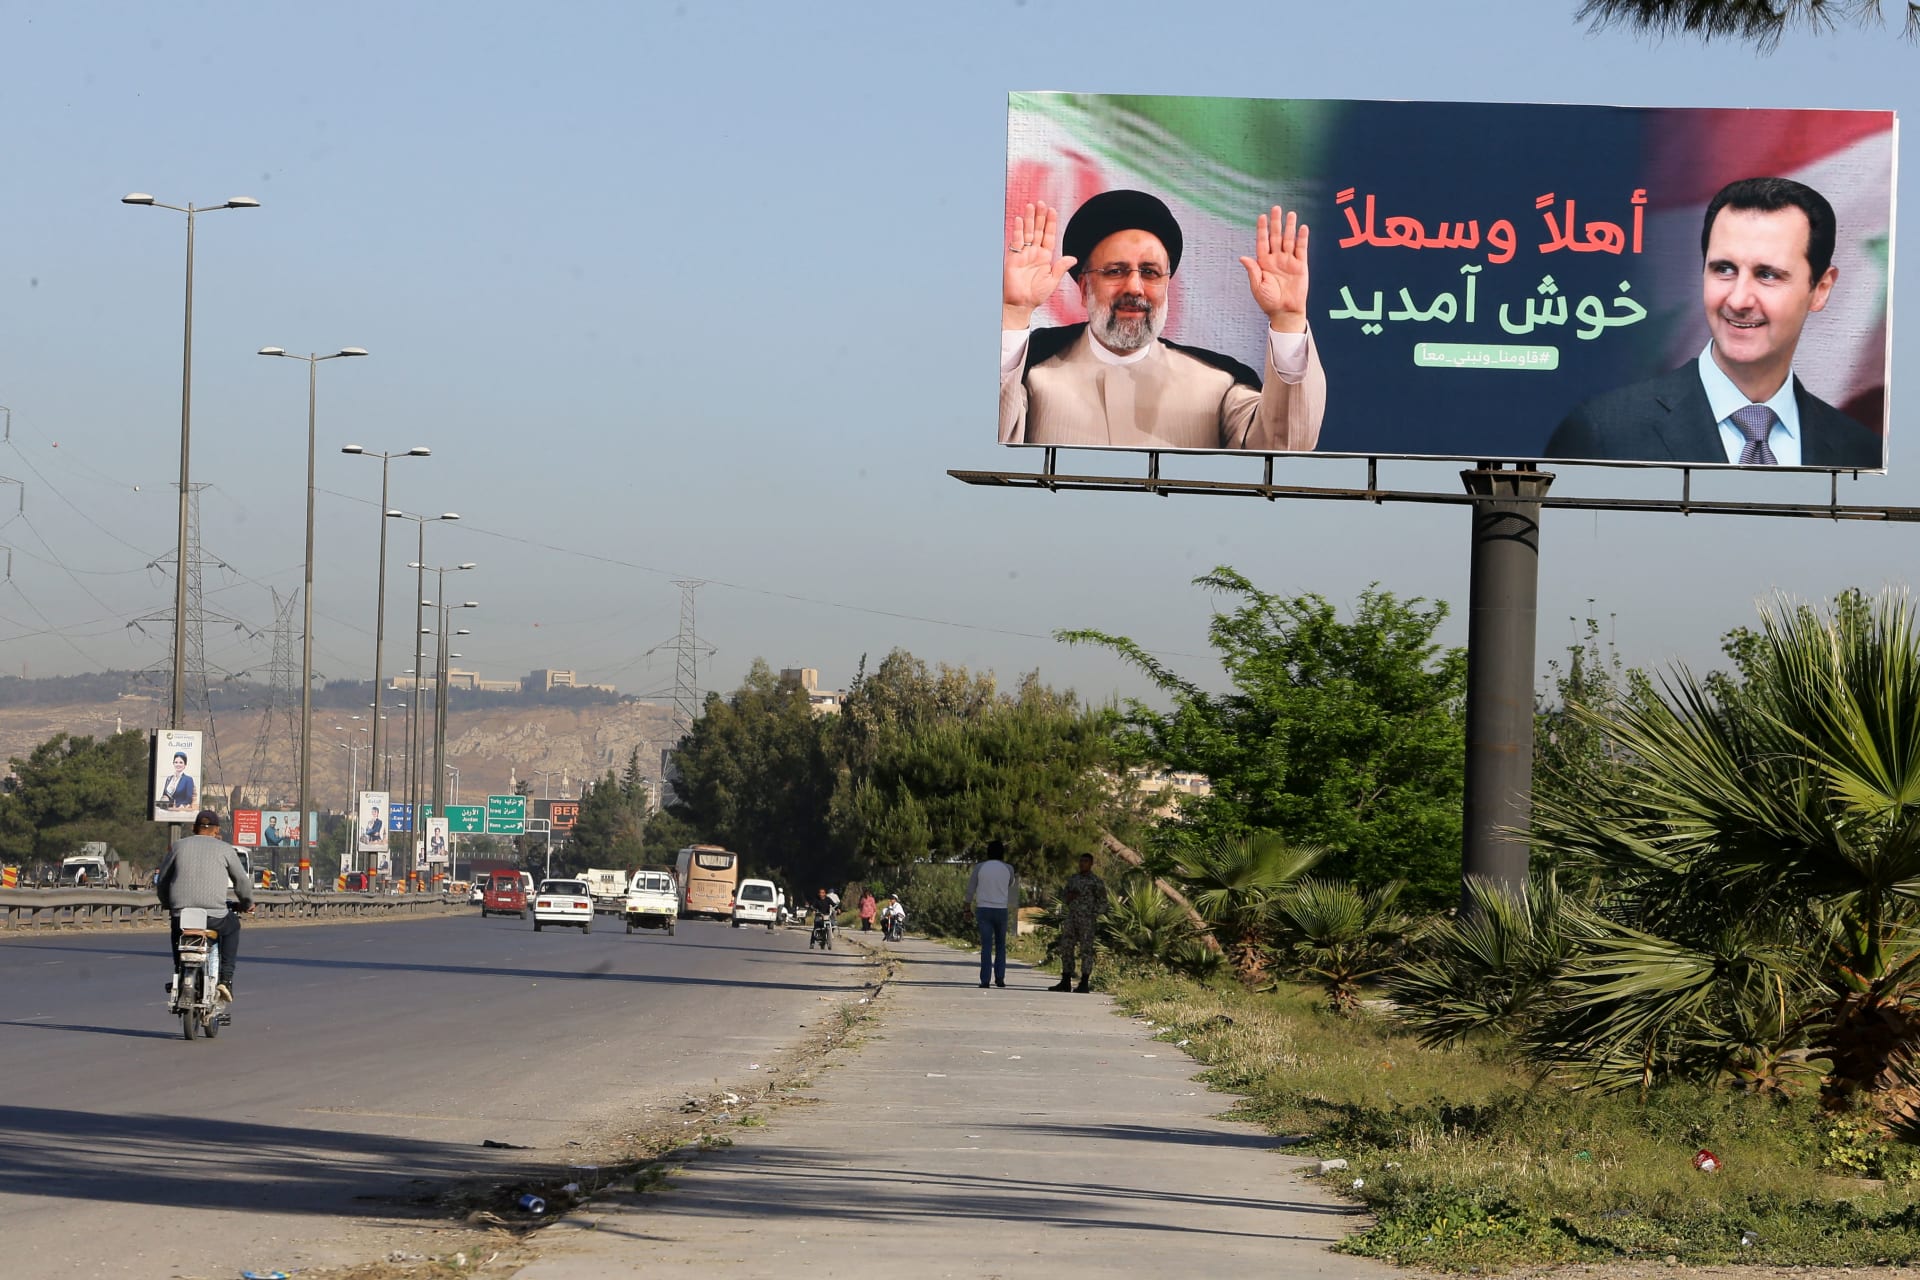 بهتافات "يا علي".. مجموعة تُرحب برئيسي في دمشق والخارجية الإيرانية: "استقبال شعبي"